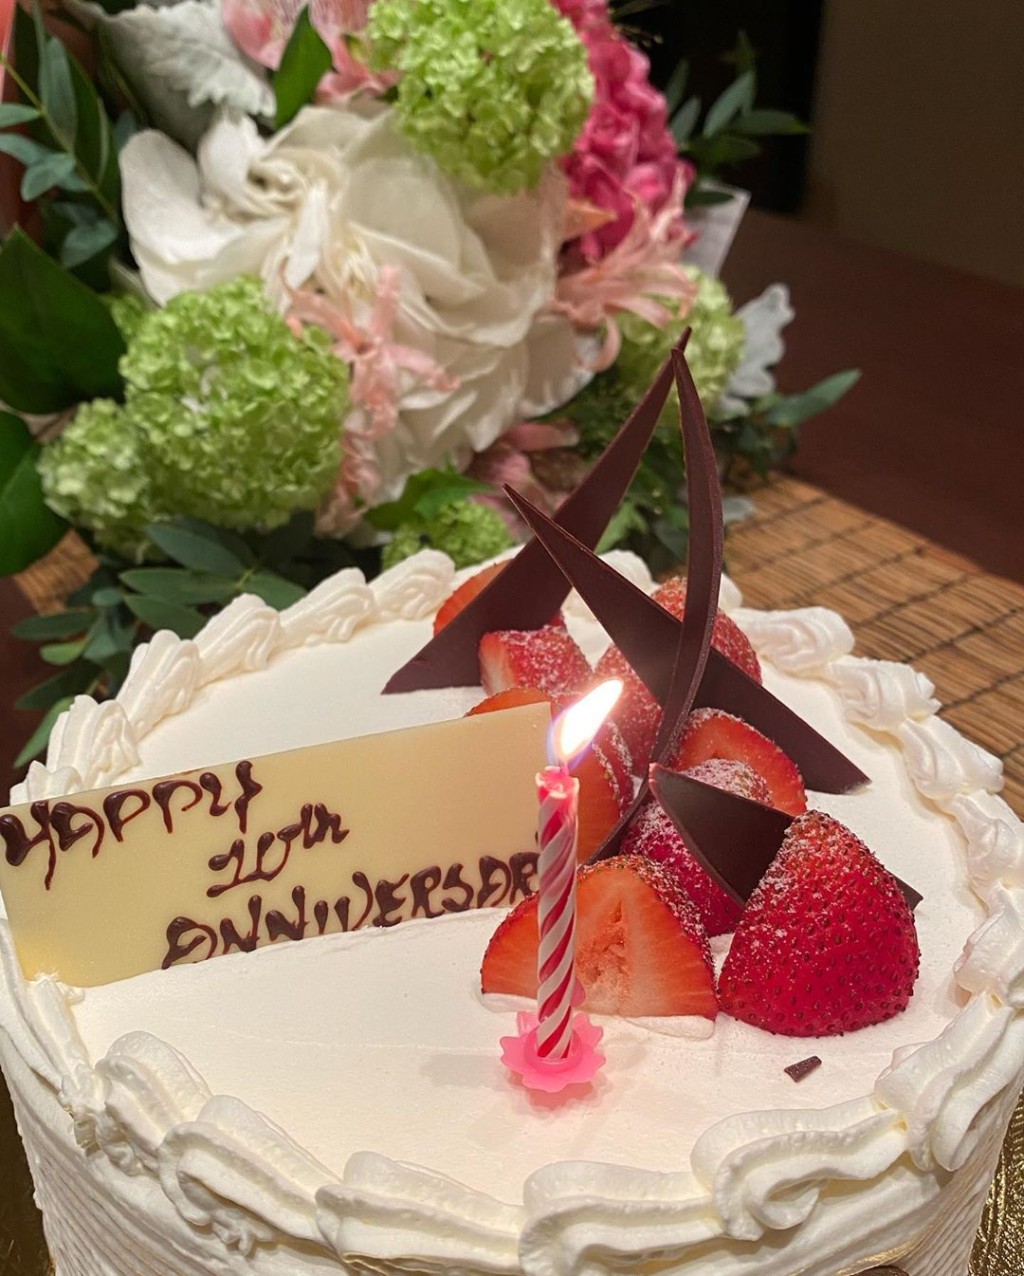 老公送花和蛋糕慶祝。